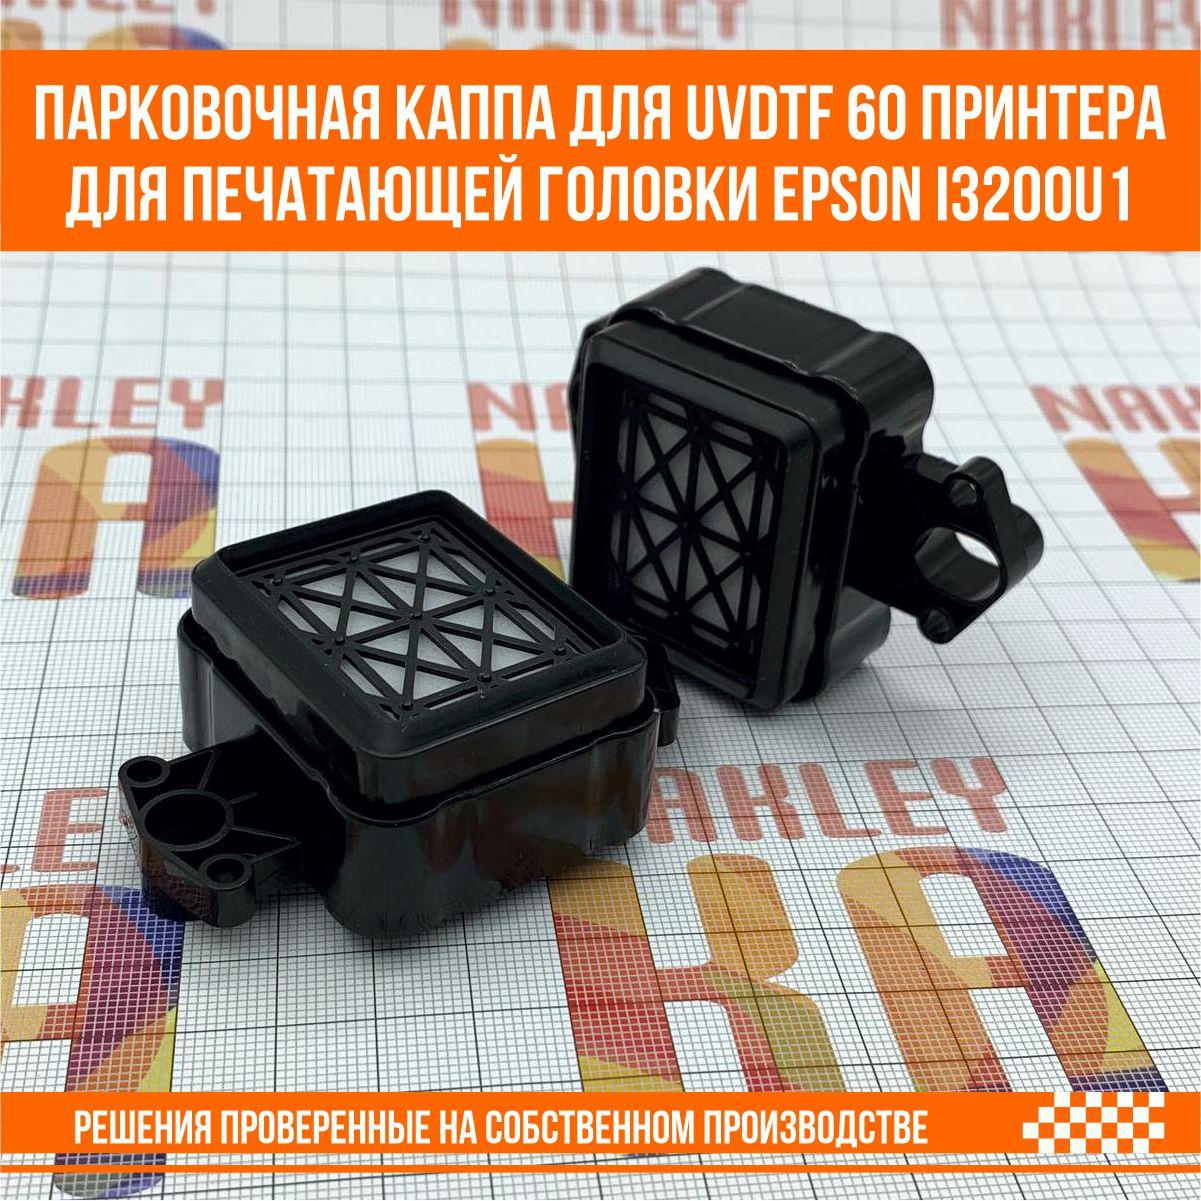 Парковочная каппа для UV DTF 60 принтера  для печатающей головки Epson i3200u1, фото 1